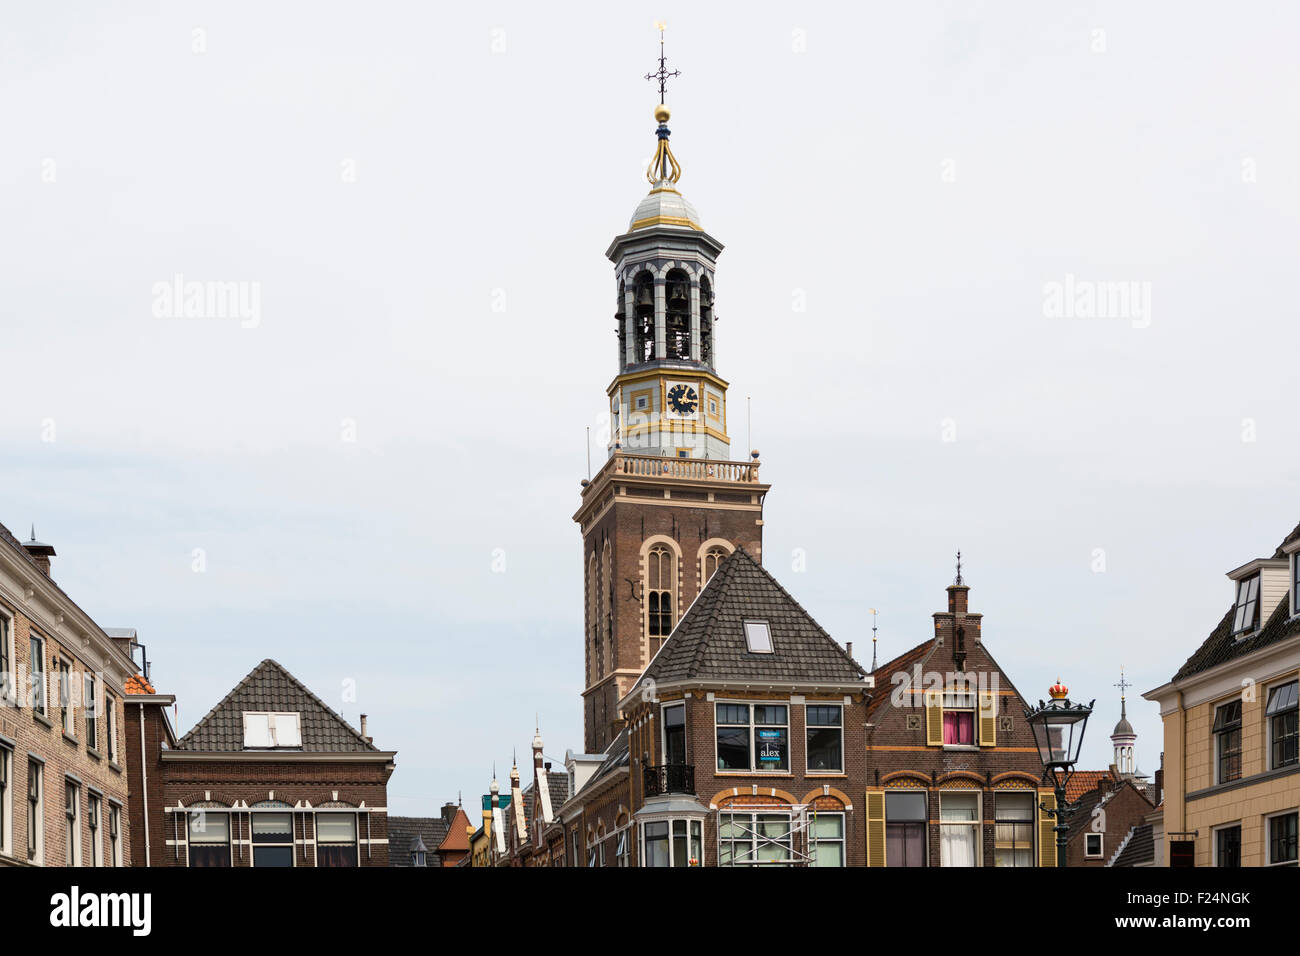 Los edificios históricos y la torre de la iglesia de la ciudad hanseática Kampen en los Países Bajos Foto de stock